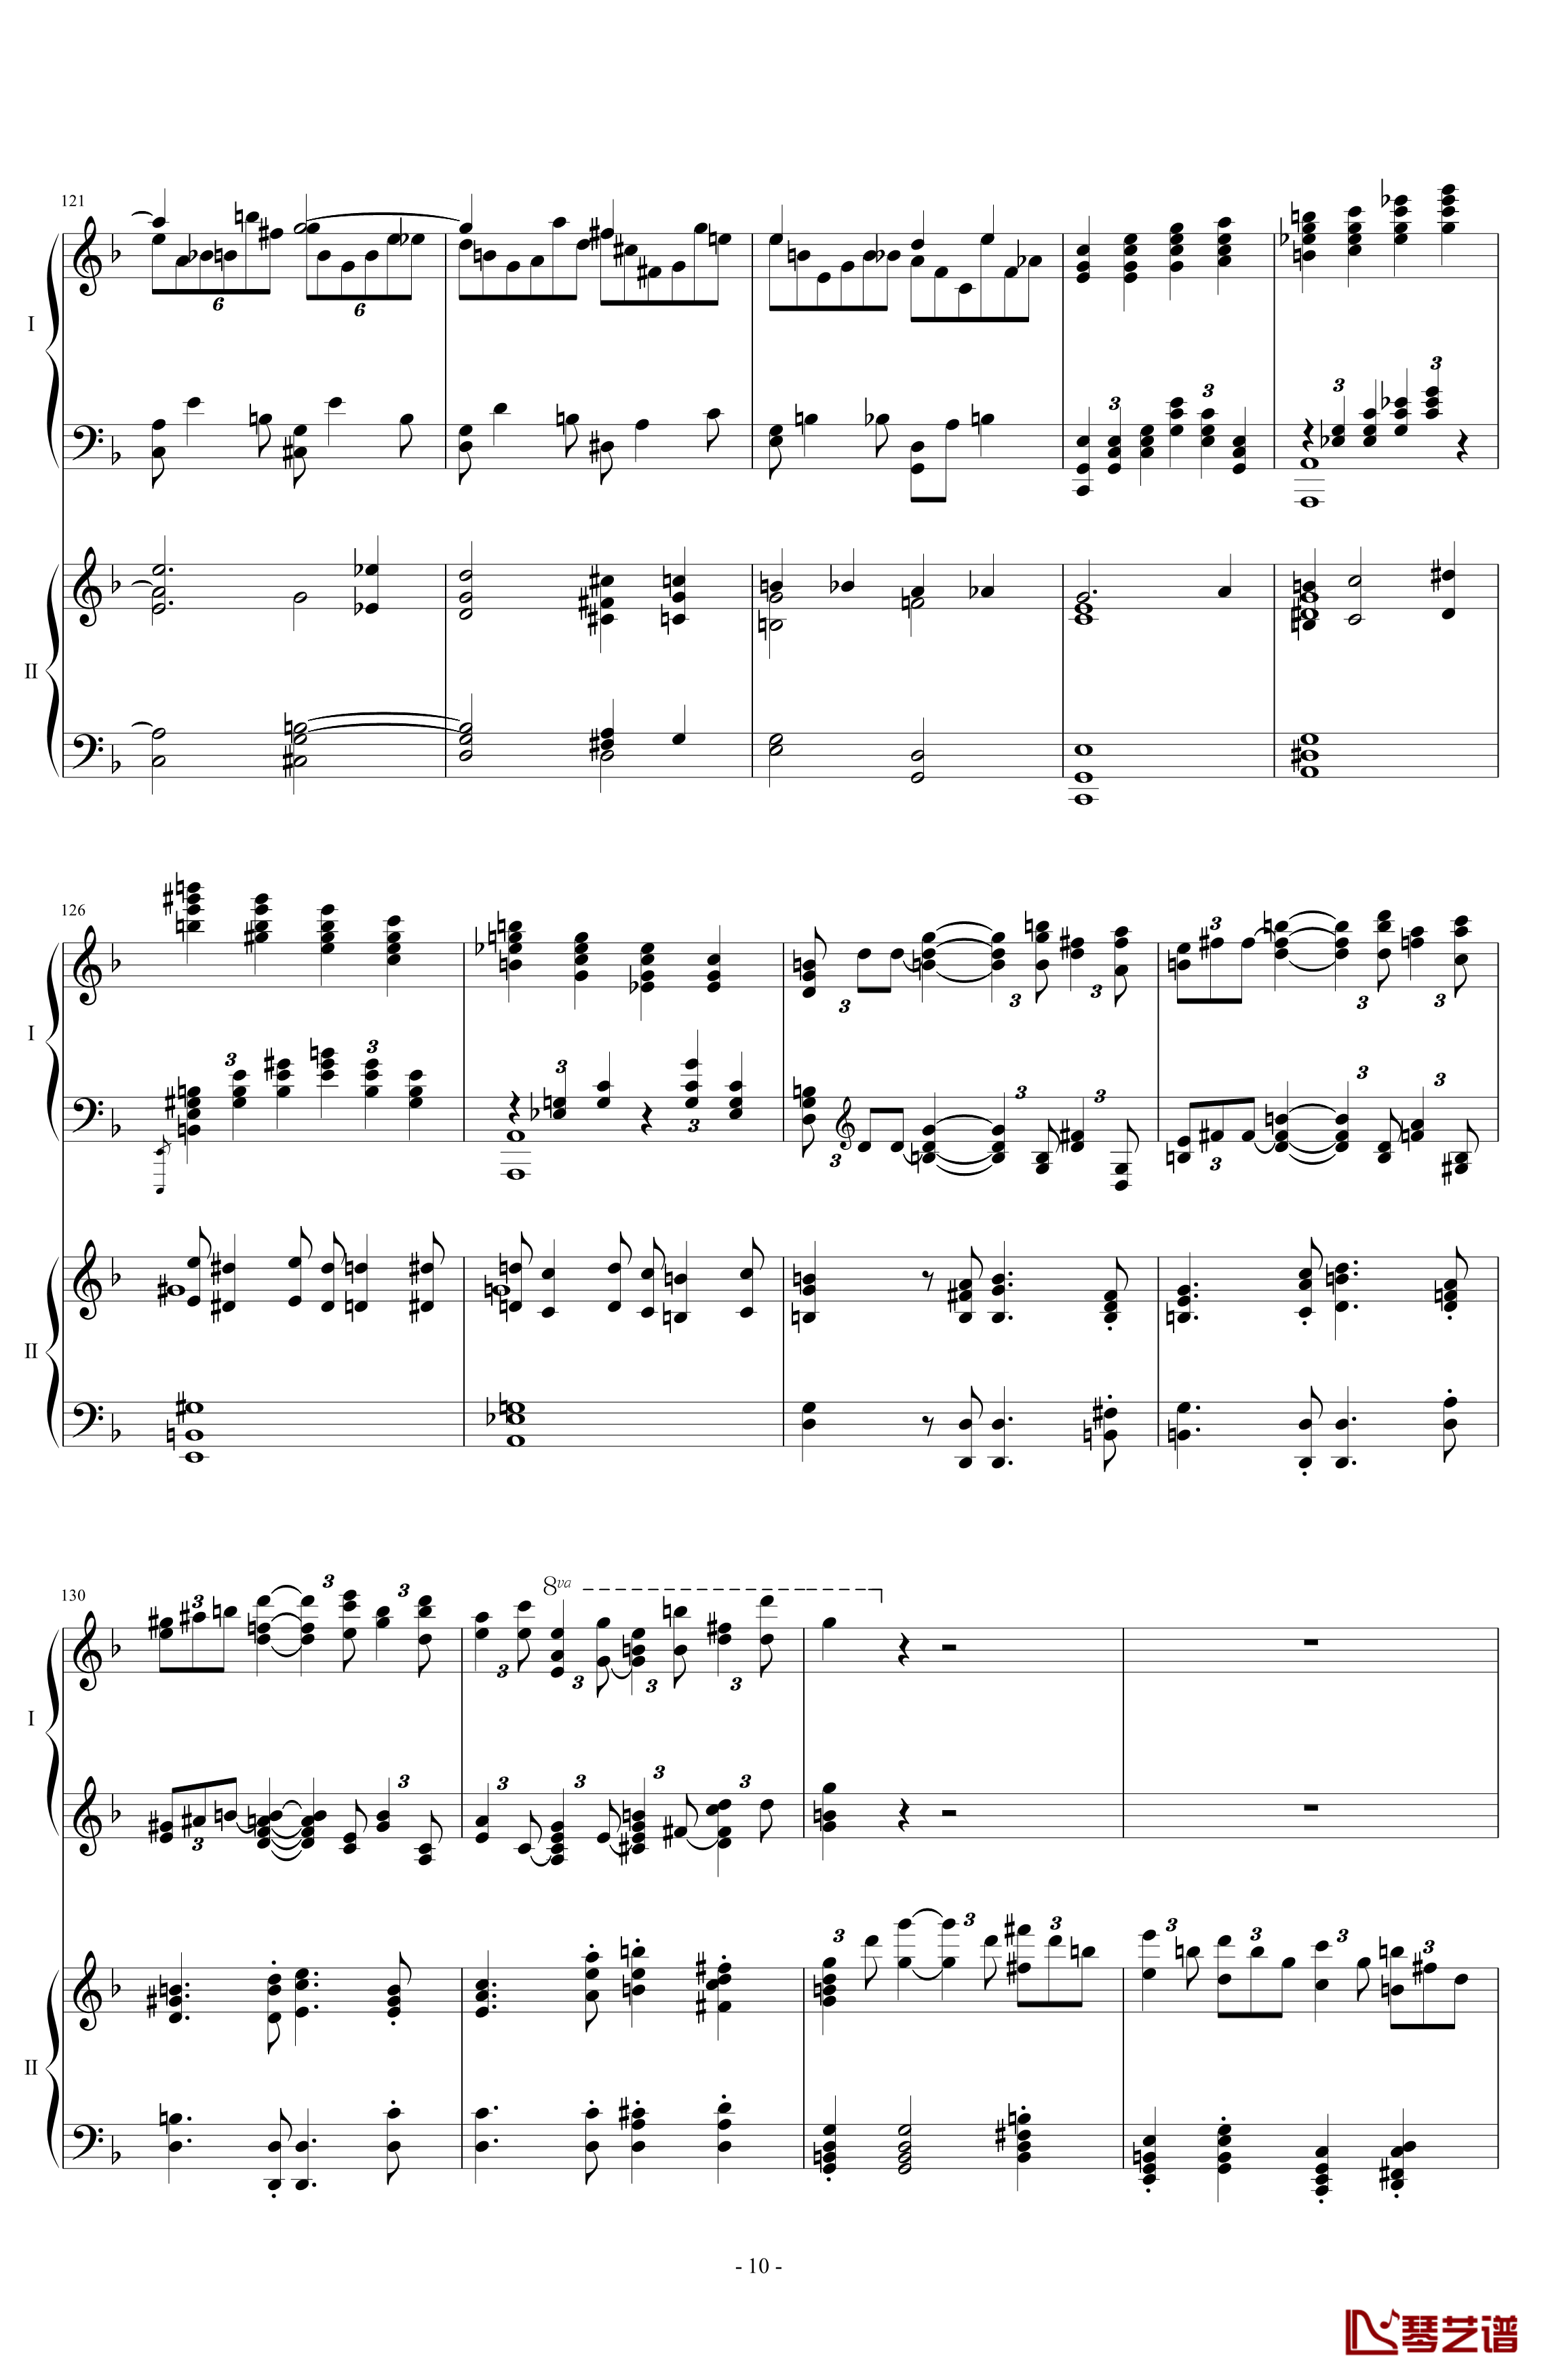 拉三第三乐章41页双钢琴钢琴谱-最难钢琴曲-拉赫马尼若夫10